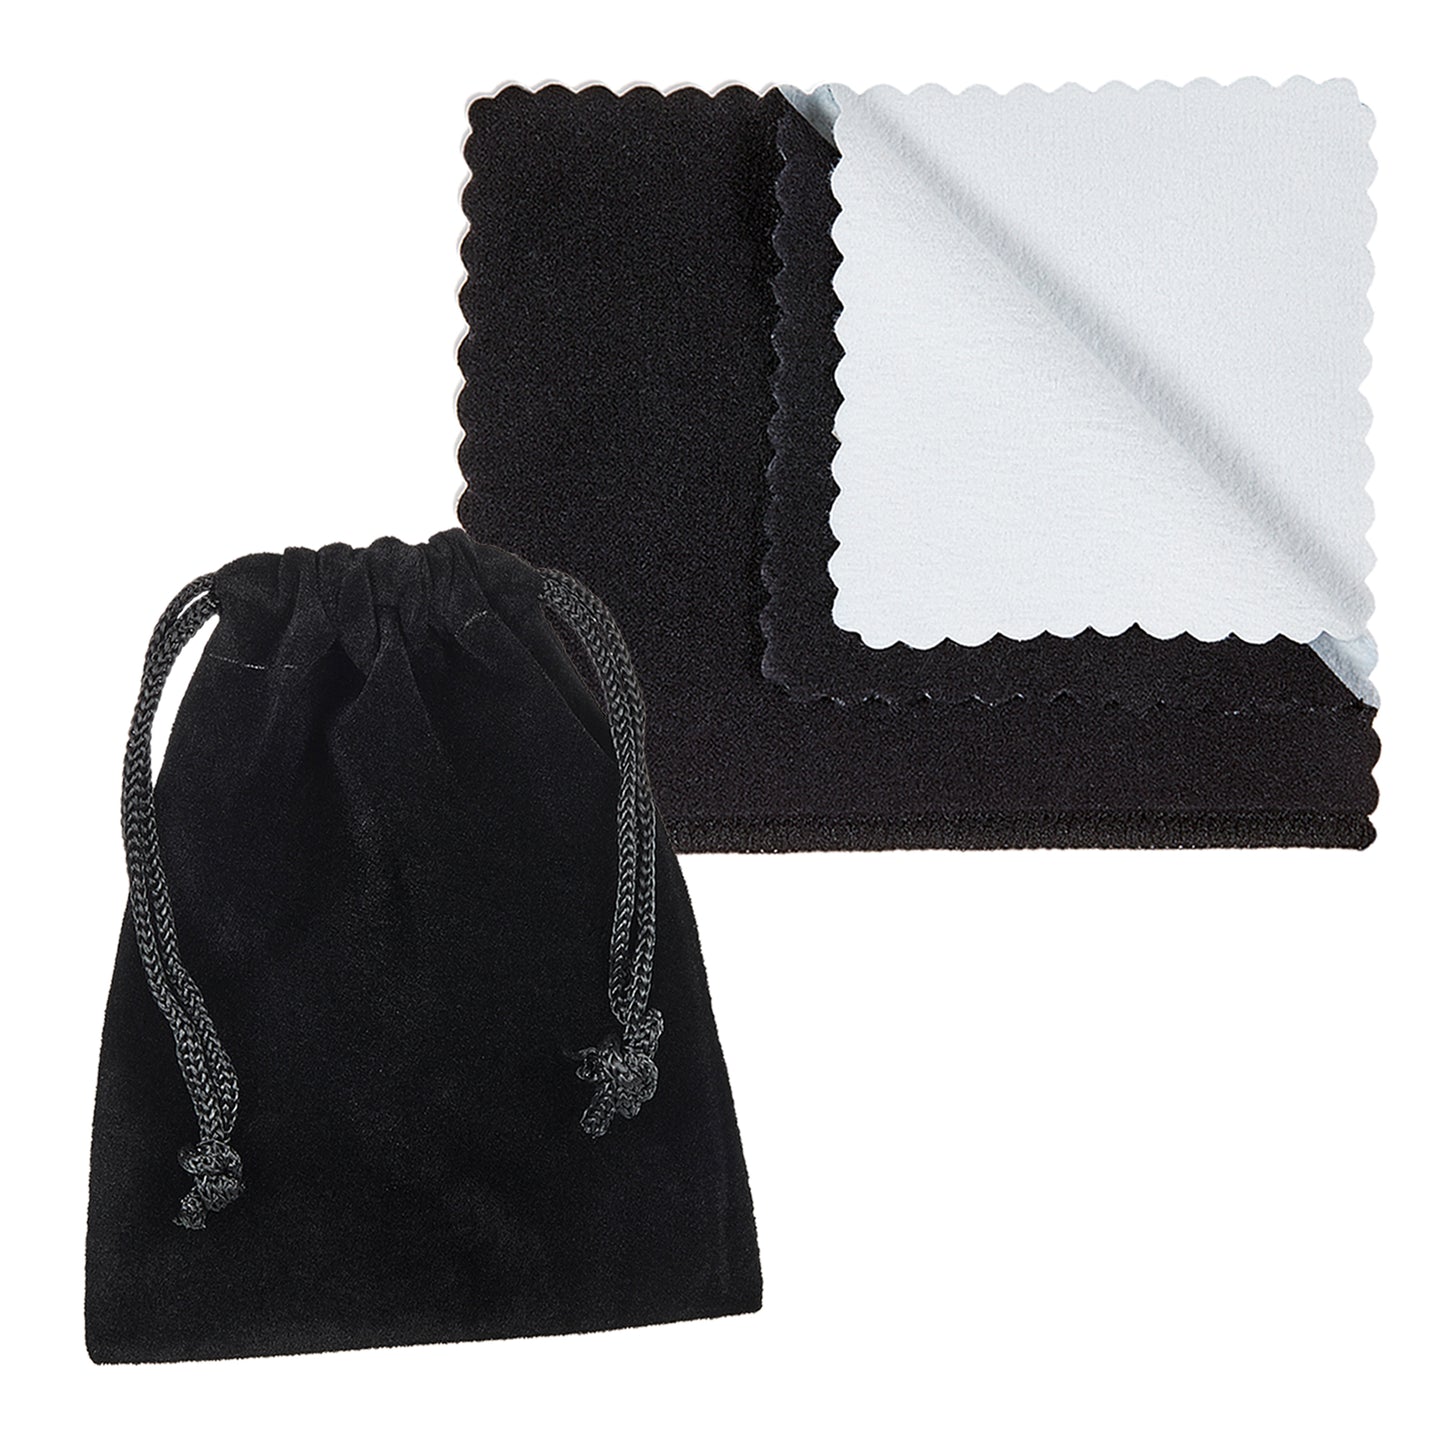 Two-Tone Titanium & Black 8mm Comfort Fit Ring w/Cubic Zirconia + Jewelry Polishing Cloth (SKU: TN-RN1028)